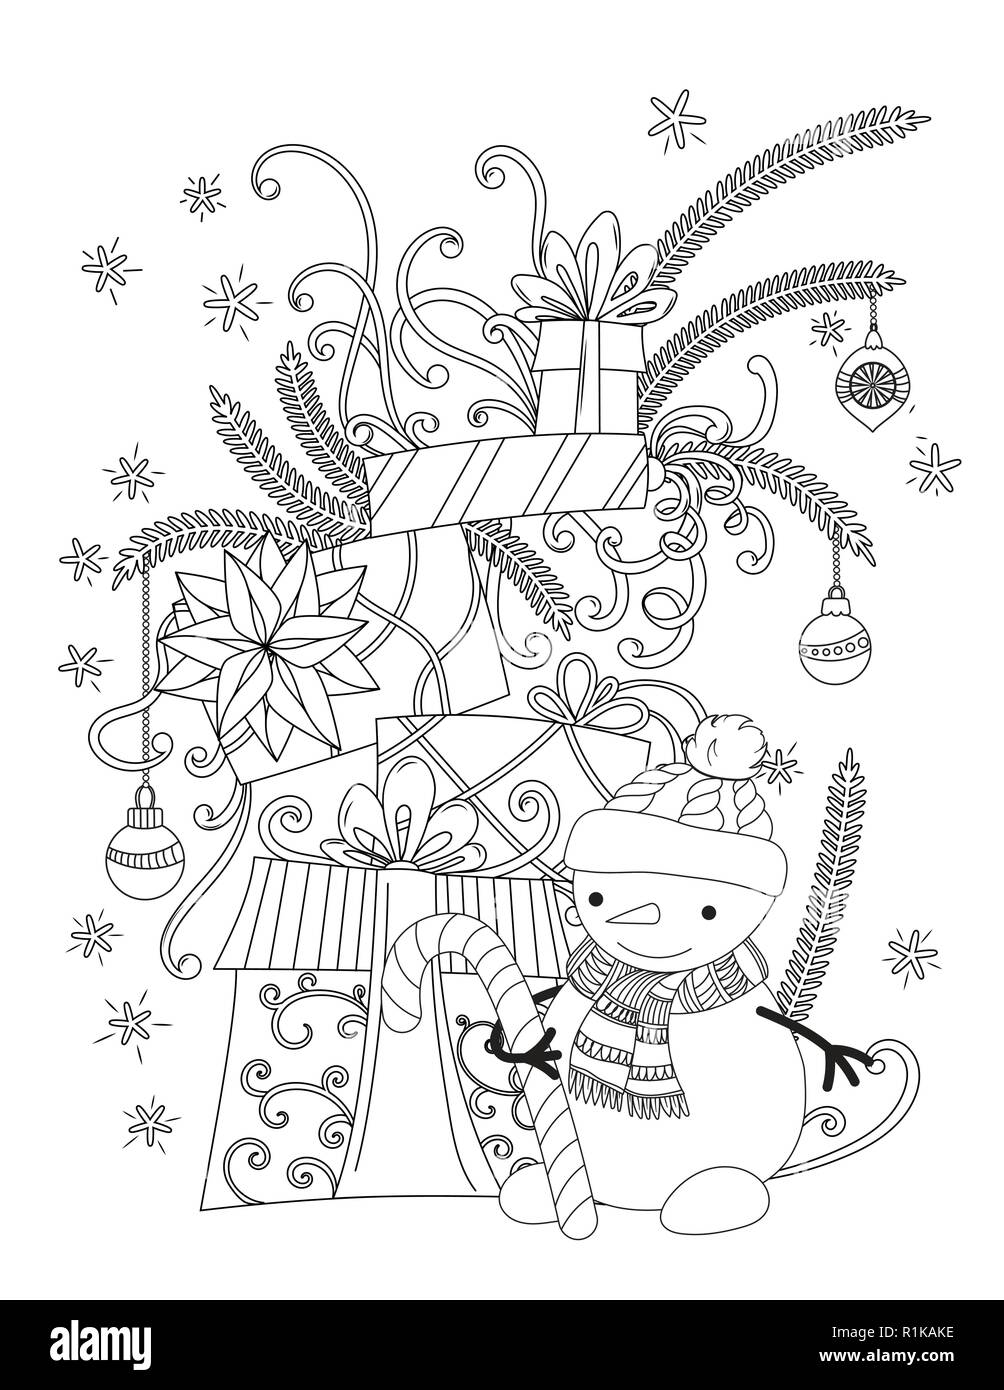 Weihnachten Malseite für Kinder und Erwachsene. Süße Schneemann mit Schal und Mütze gestrickt. Stapel von Urlaub präsentiert. Hand Vector Illustration gezeichnet. Stock Vektor